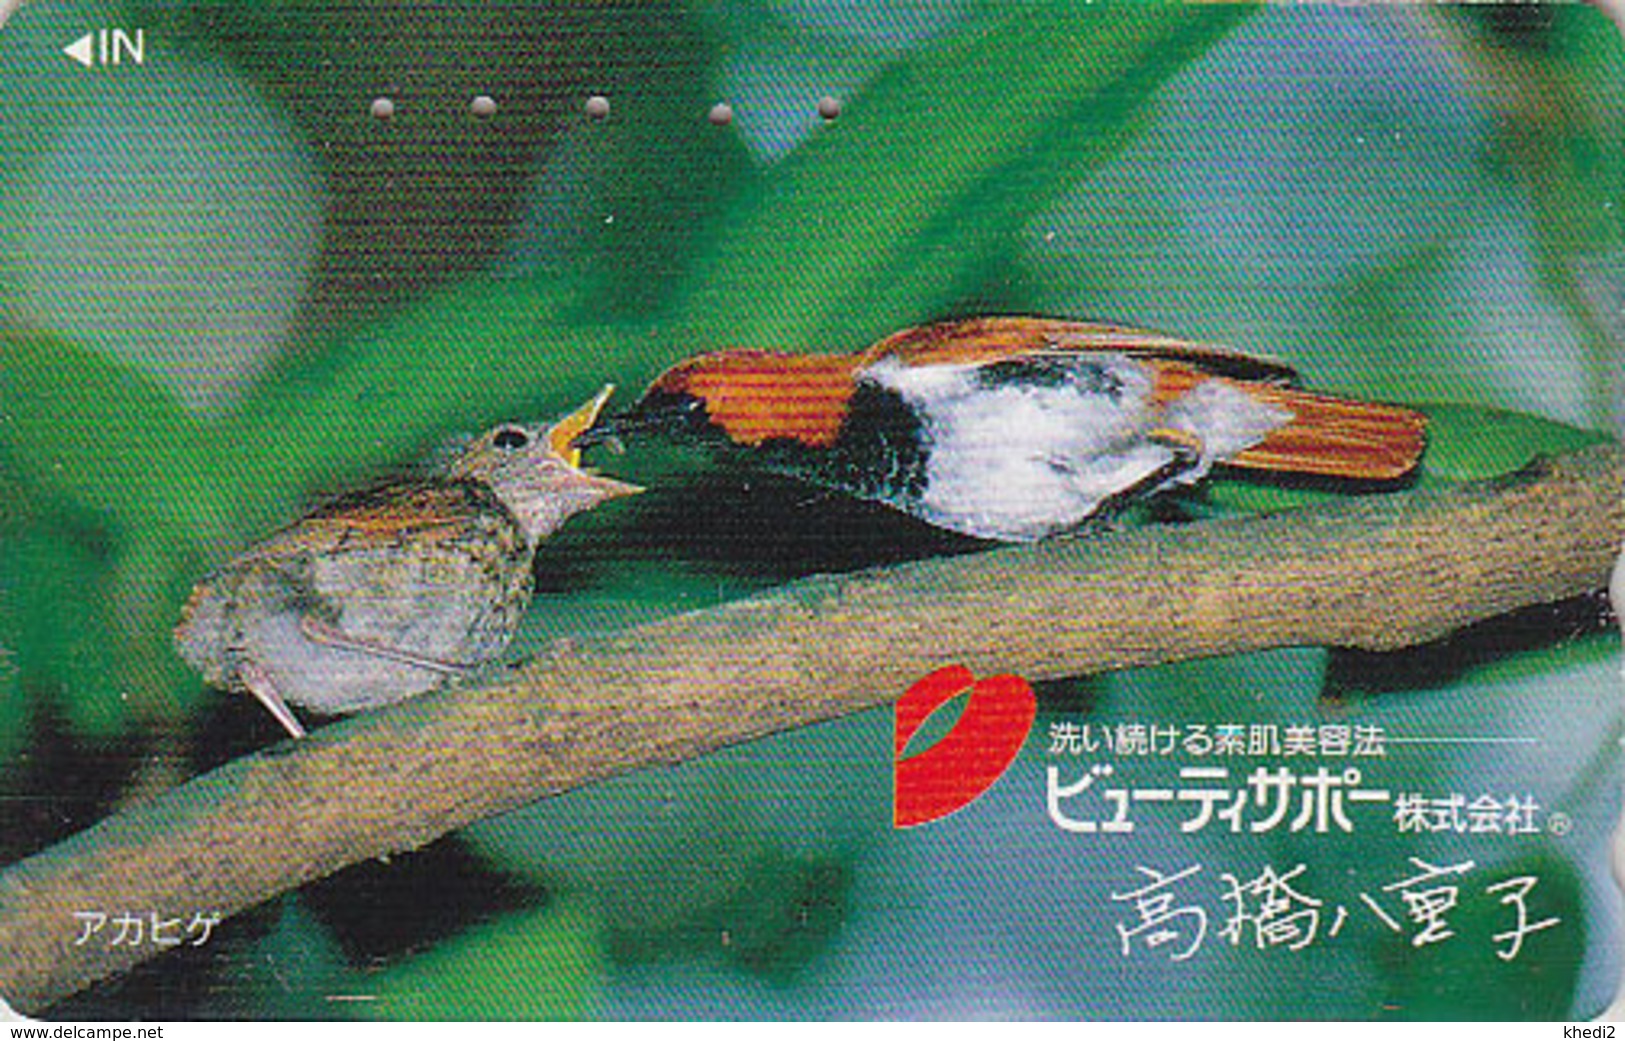 Télécarte Japon / 110-011 - Animal - OISEAU Au Nid - SONG BIRD Feeding Japan Phonecard - BE 4481 - Songbirds & Tree Dwellers